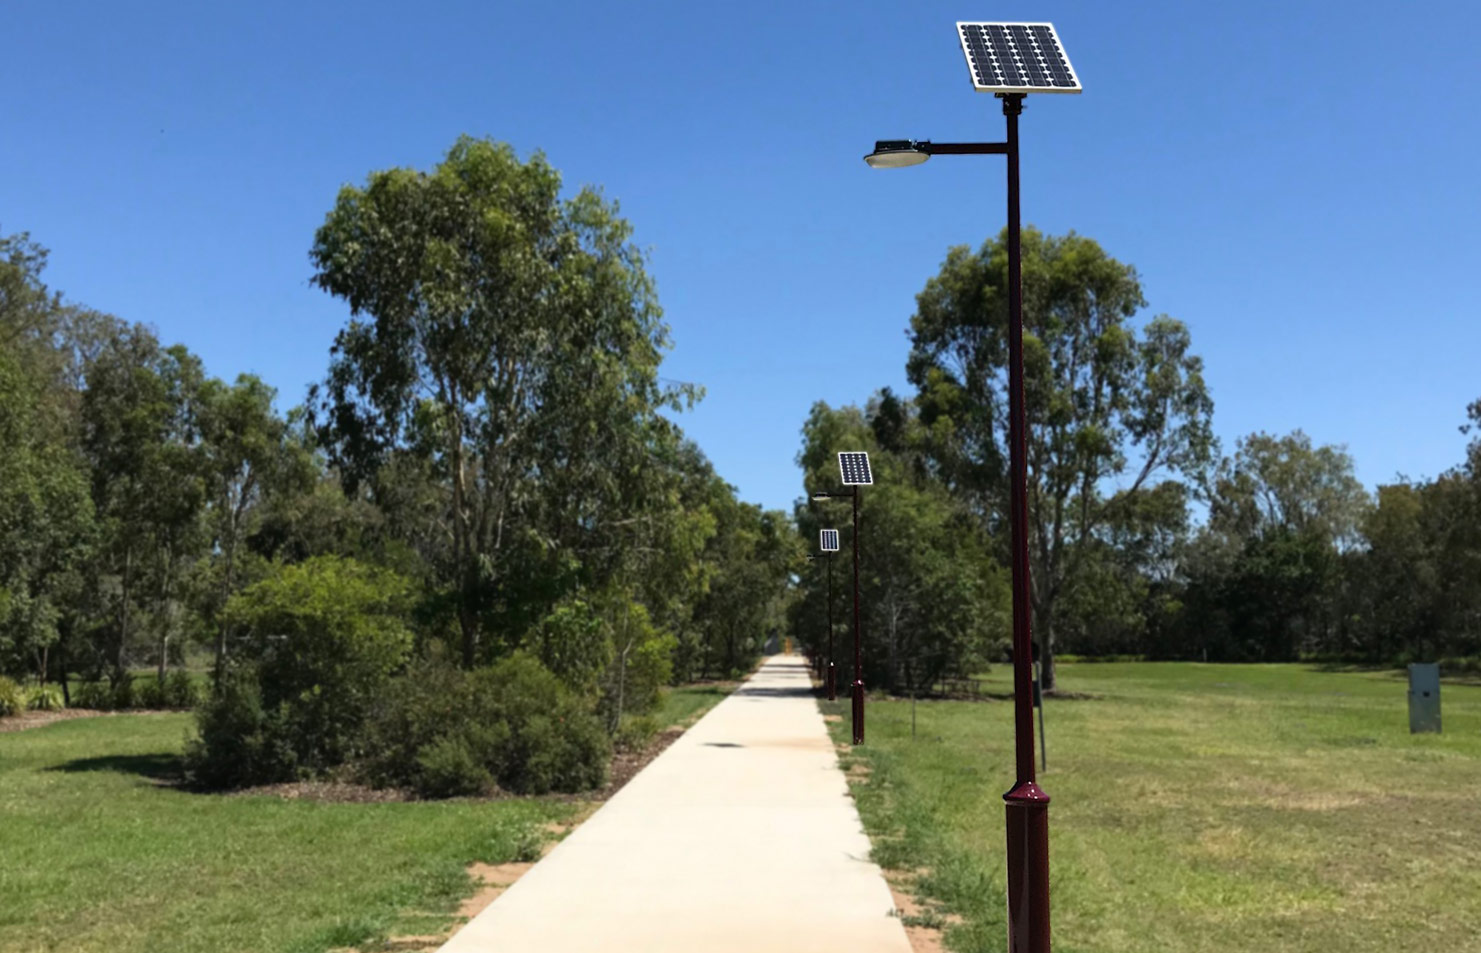 30W Delta Solar Promenade Light Pole